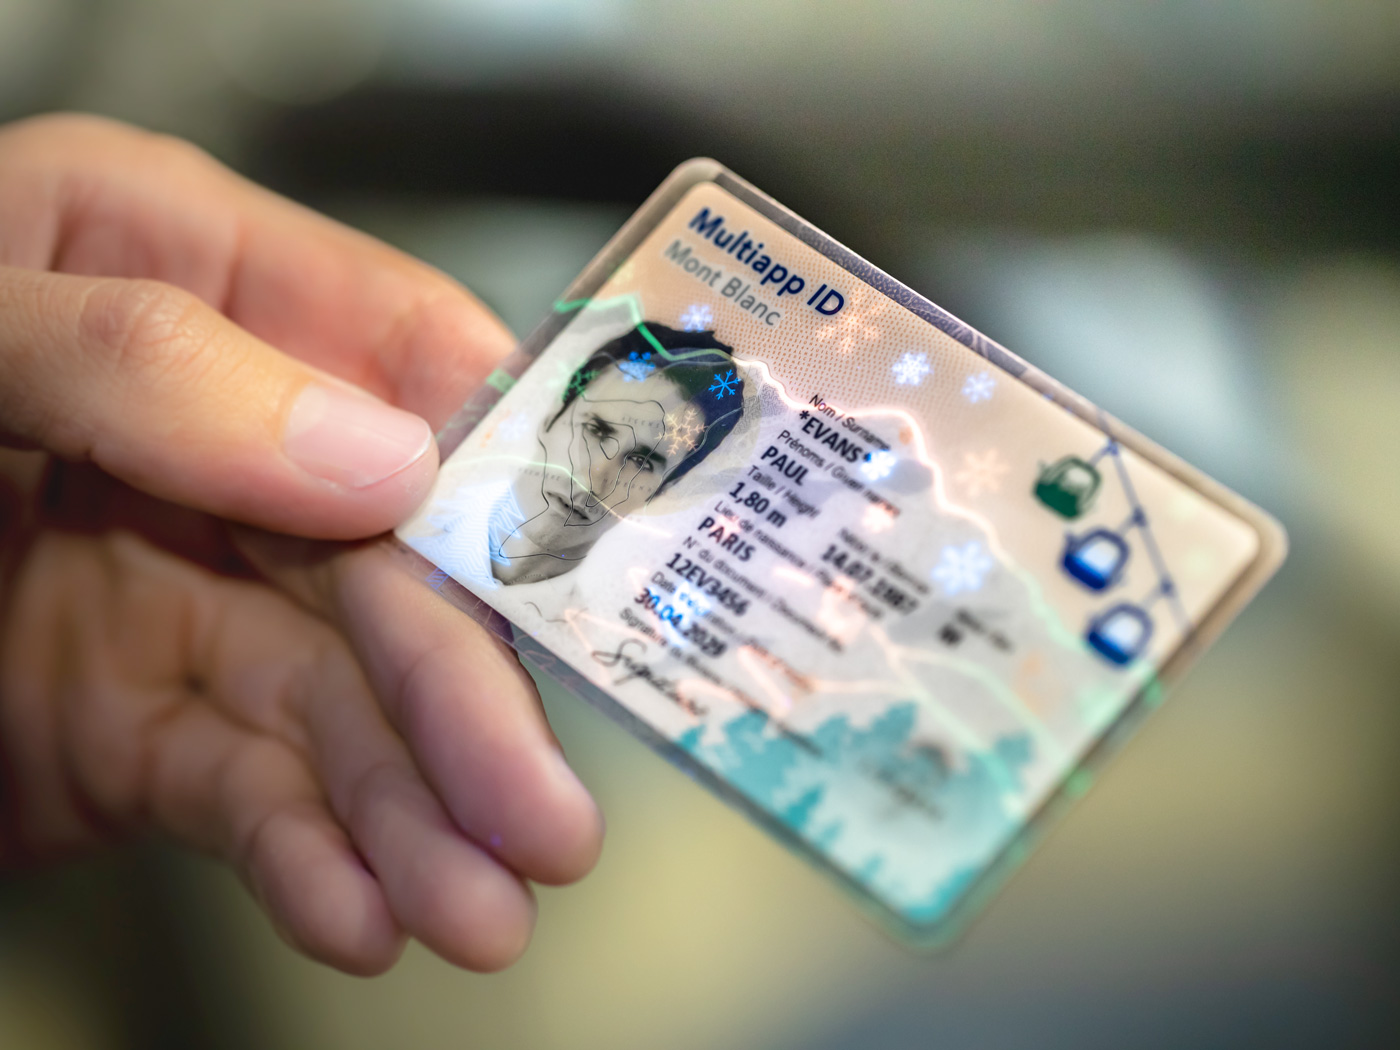 Nauru fake id card